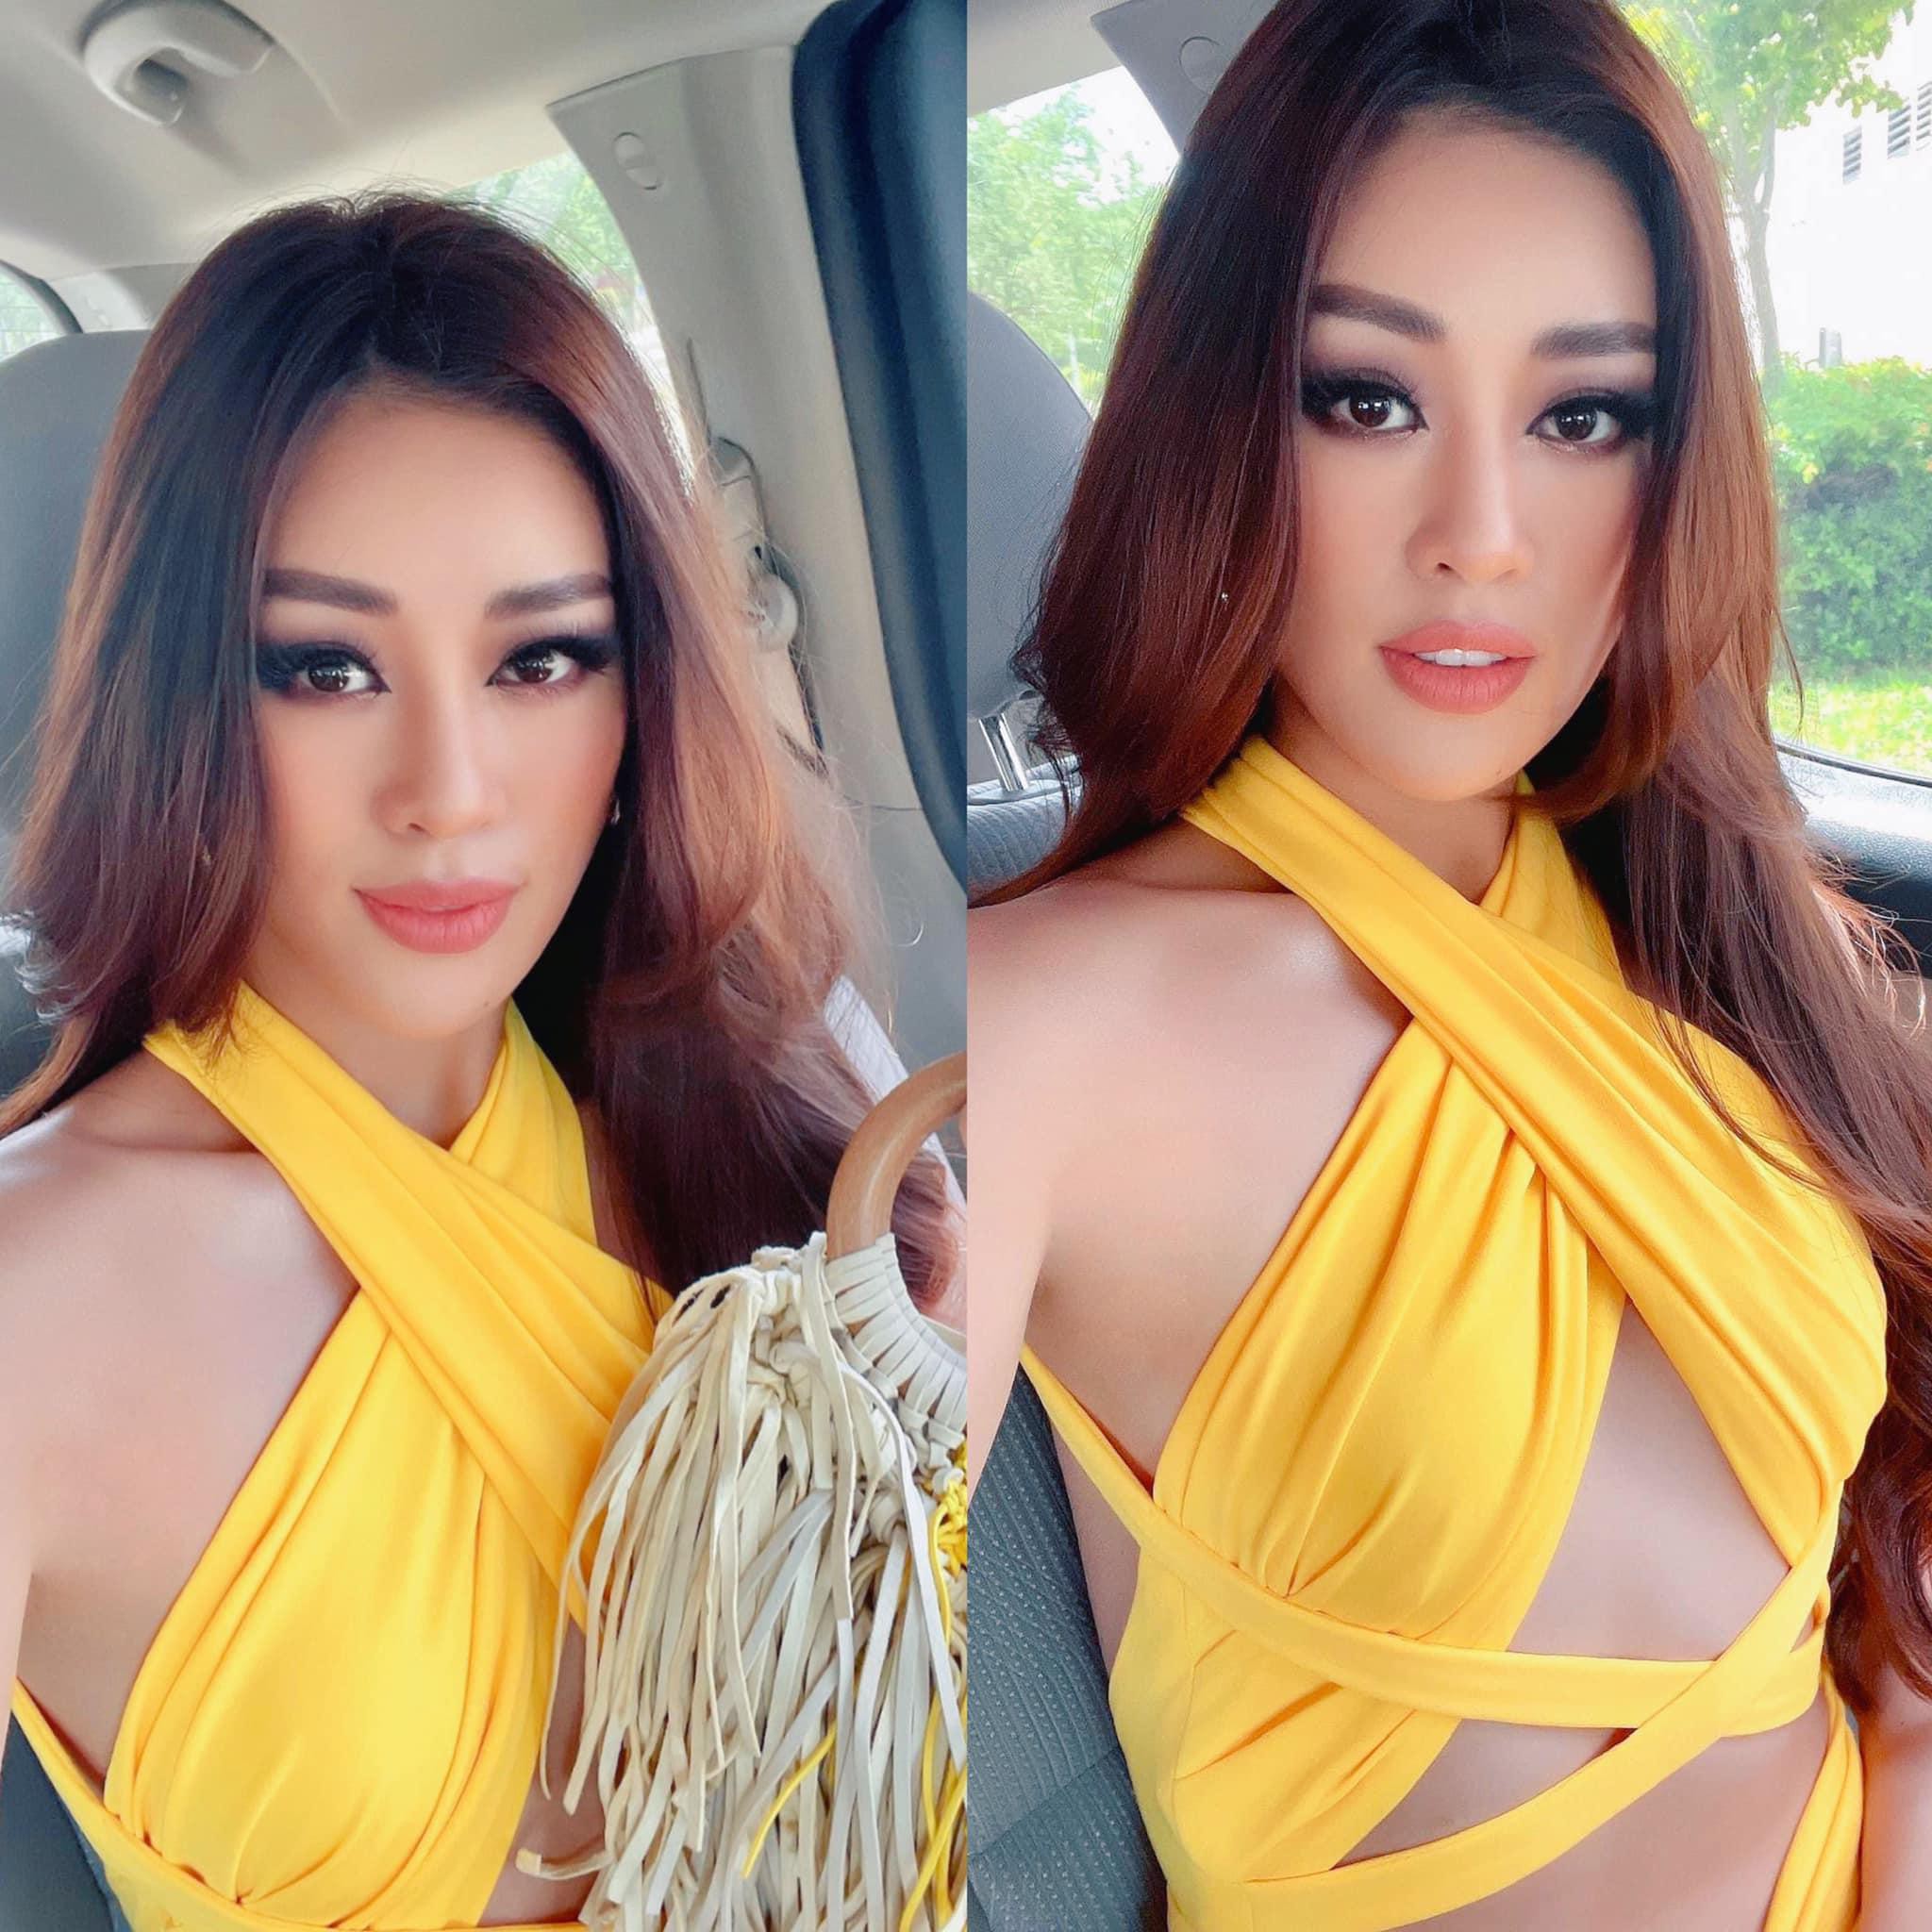 Khánh Vân tiếp tục tỏa sáng tại Miss Universe 2020 khi diện váy vàng chóe, cắt xẻ táo bạo - Ảnh 1.